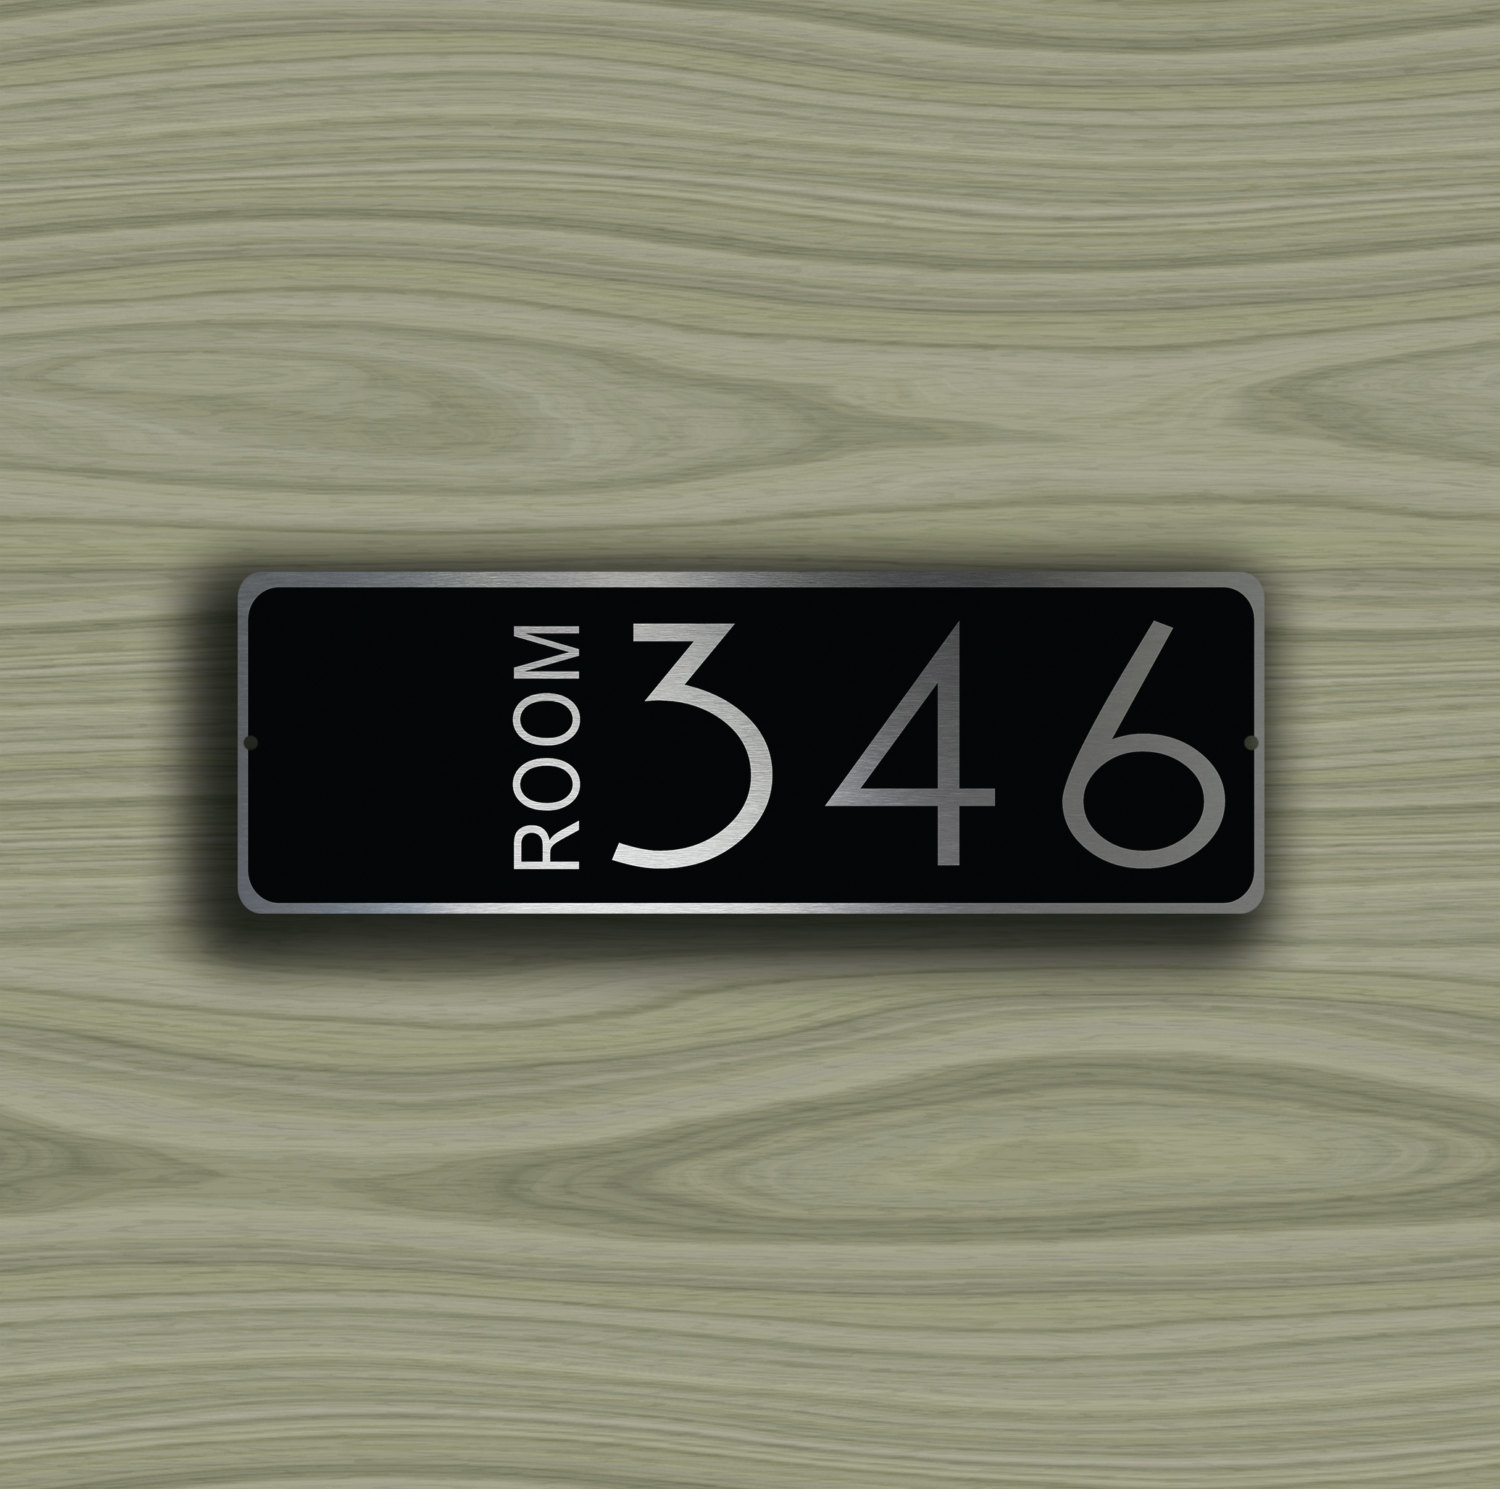 CUSTOM-HOTEL-ROOM-Door-Number-Sign-2